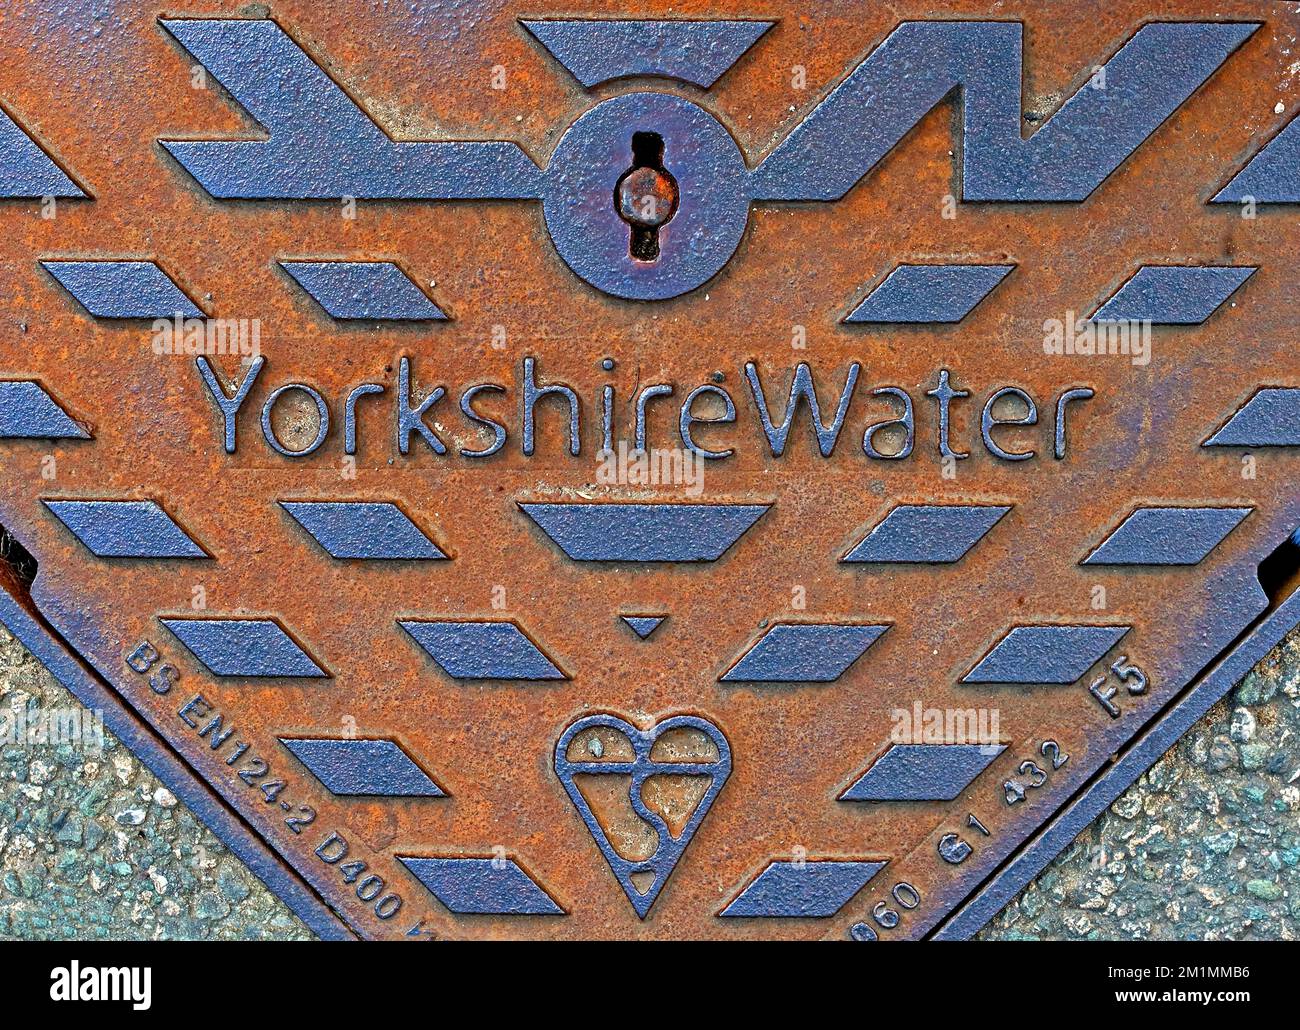 Réseau de fer Yorkshire Water, Filey, Angleterre, Royaume-Uni Banque D'Images